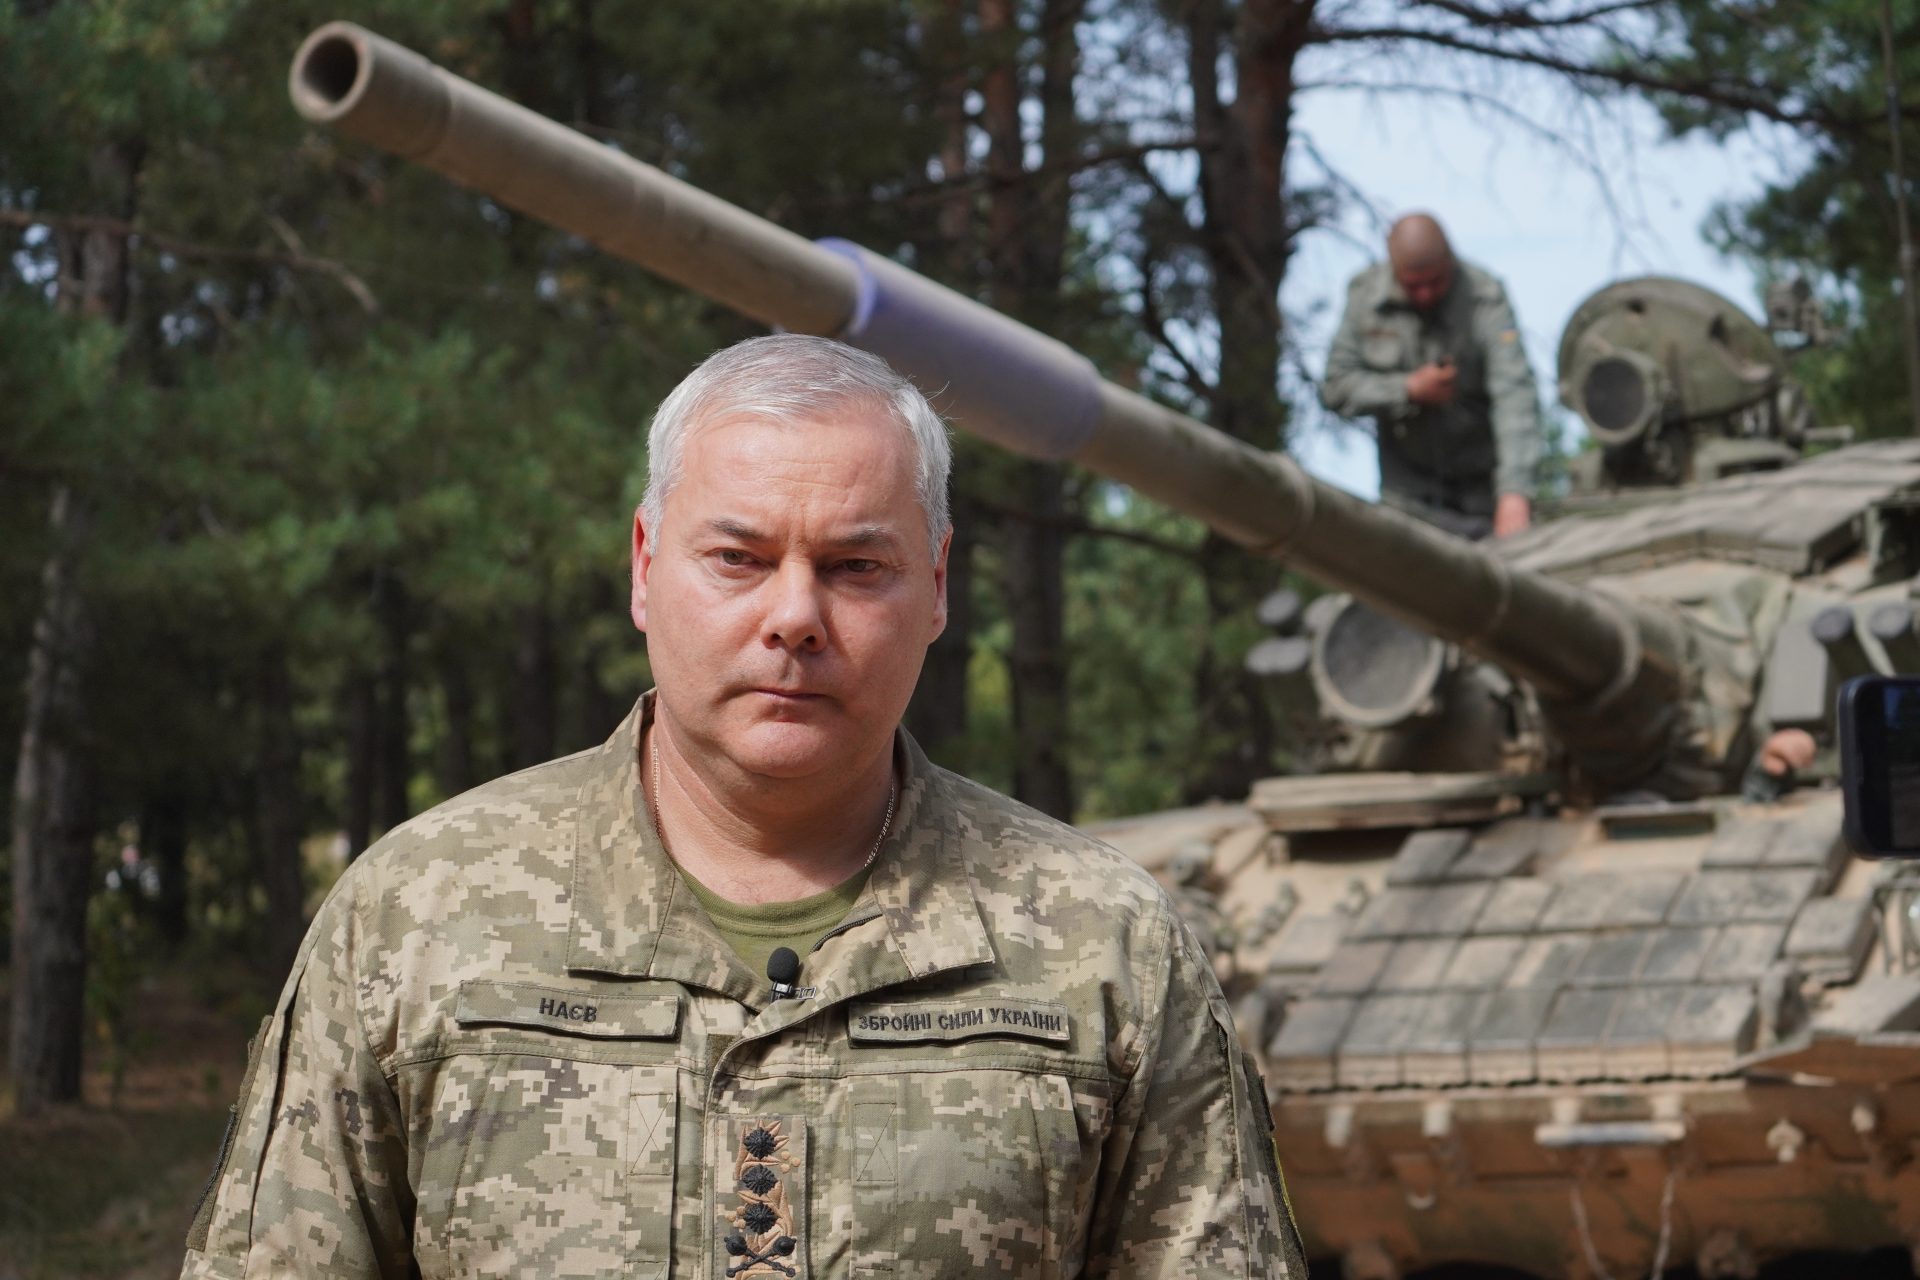 Oekraïense tankbemanning enthousiast over de Duitse Leopard 2A6